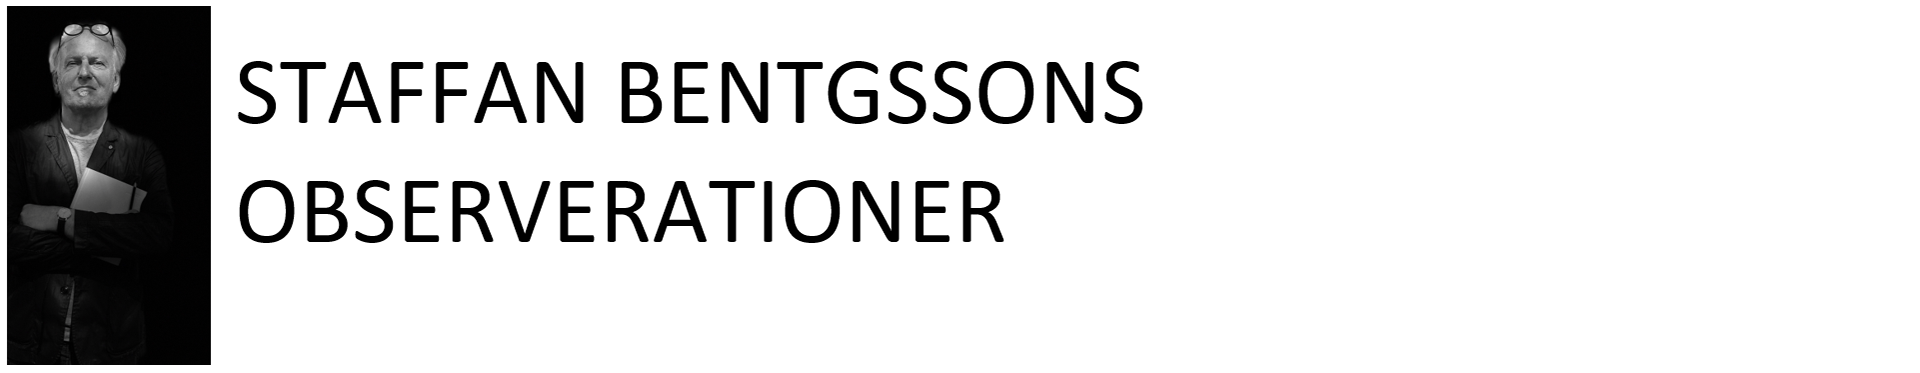 Staffan Bengtssons Obsvervationer